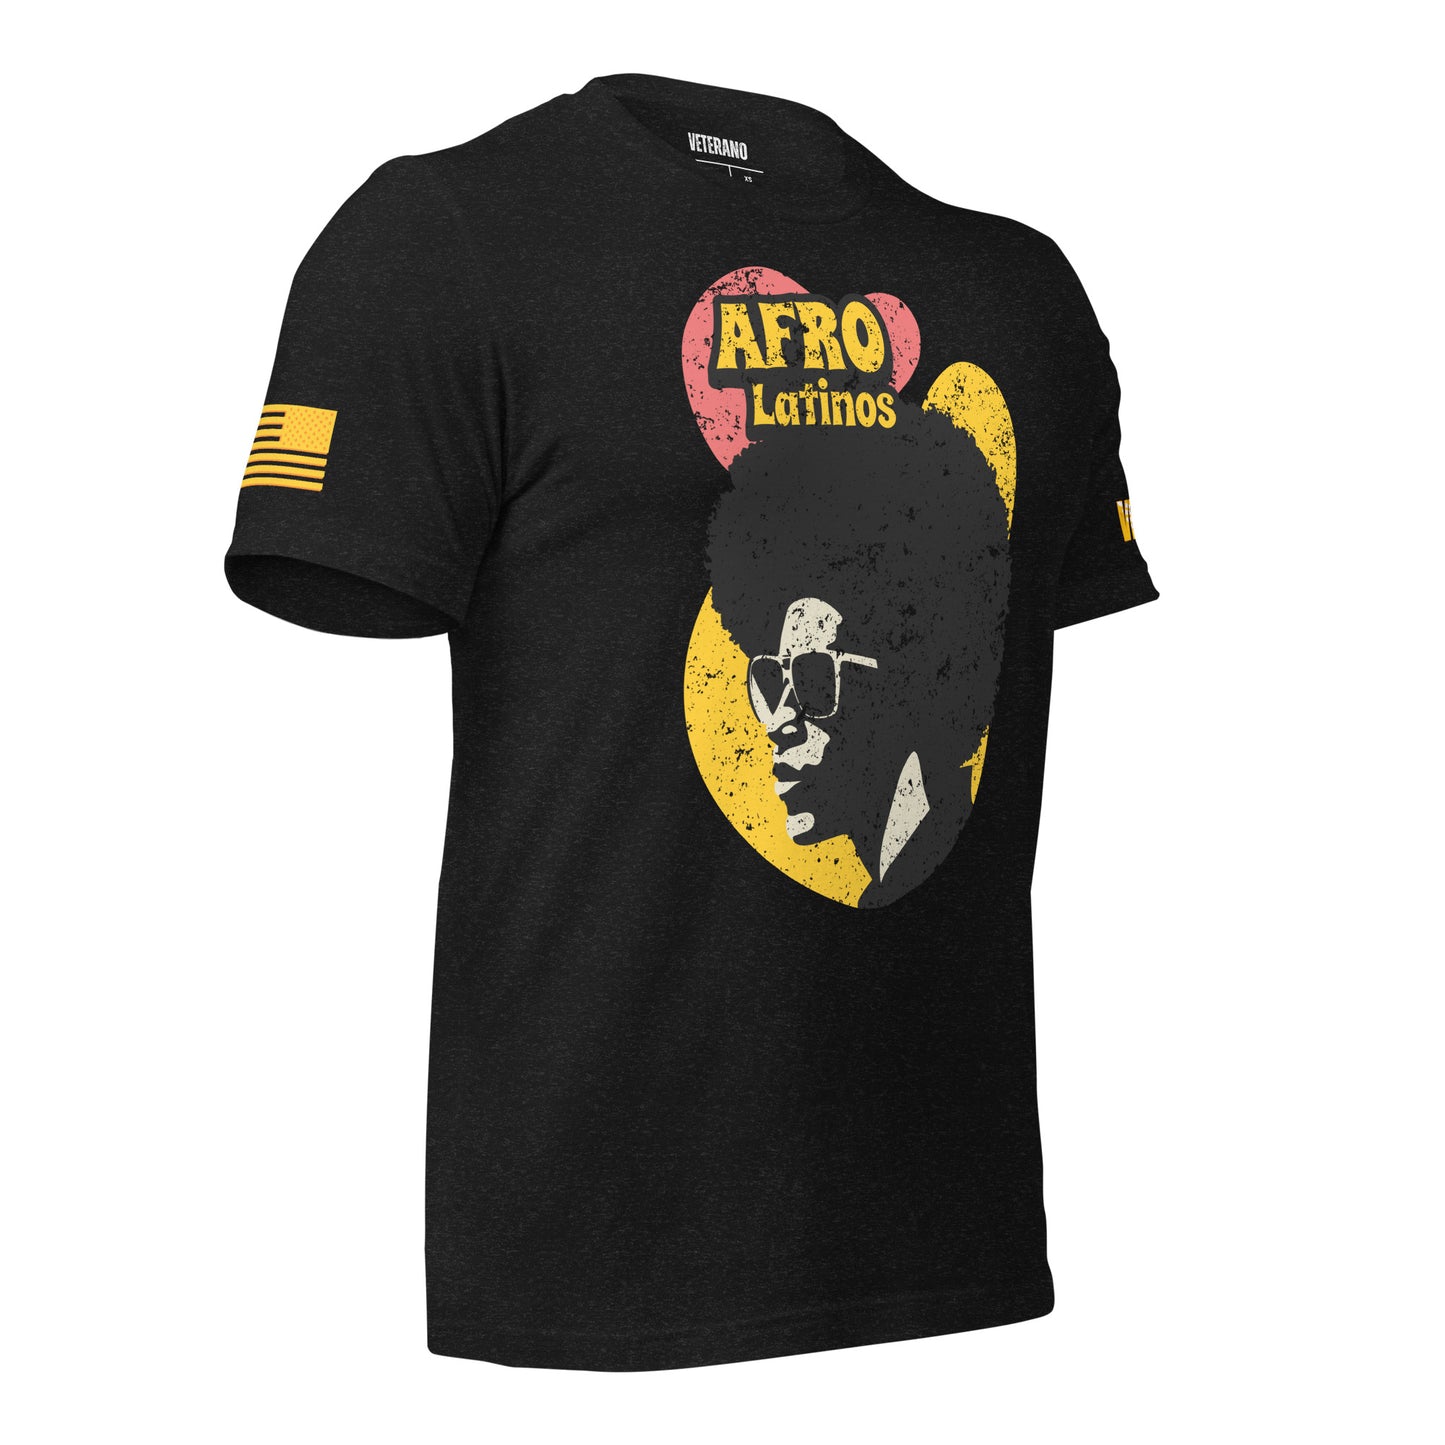 Afro Latino Retro Veterano T-Shirt